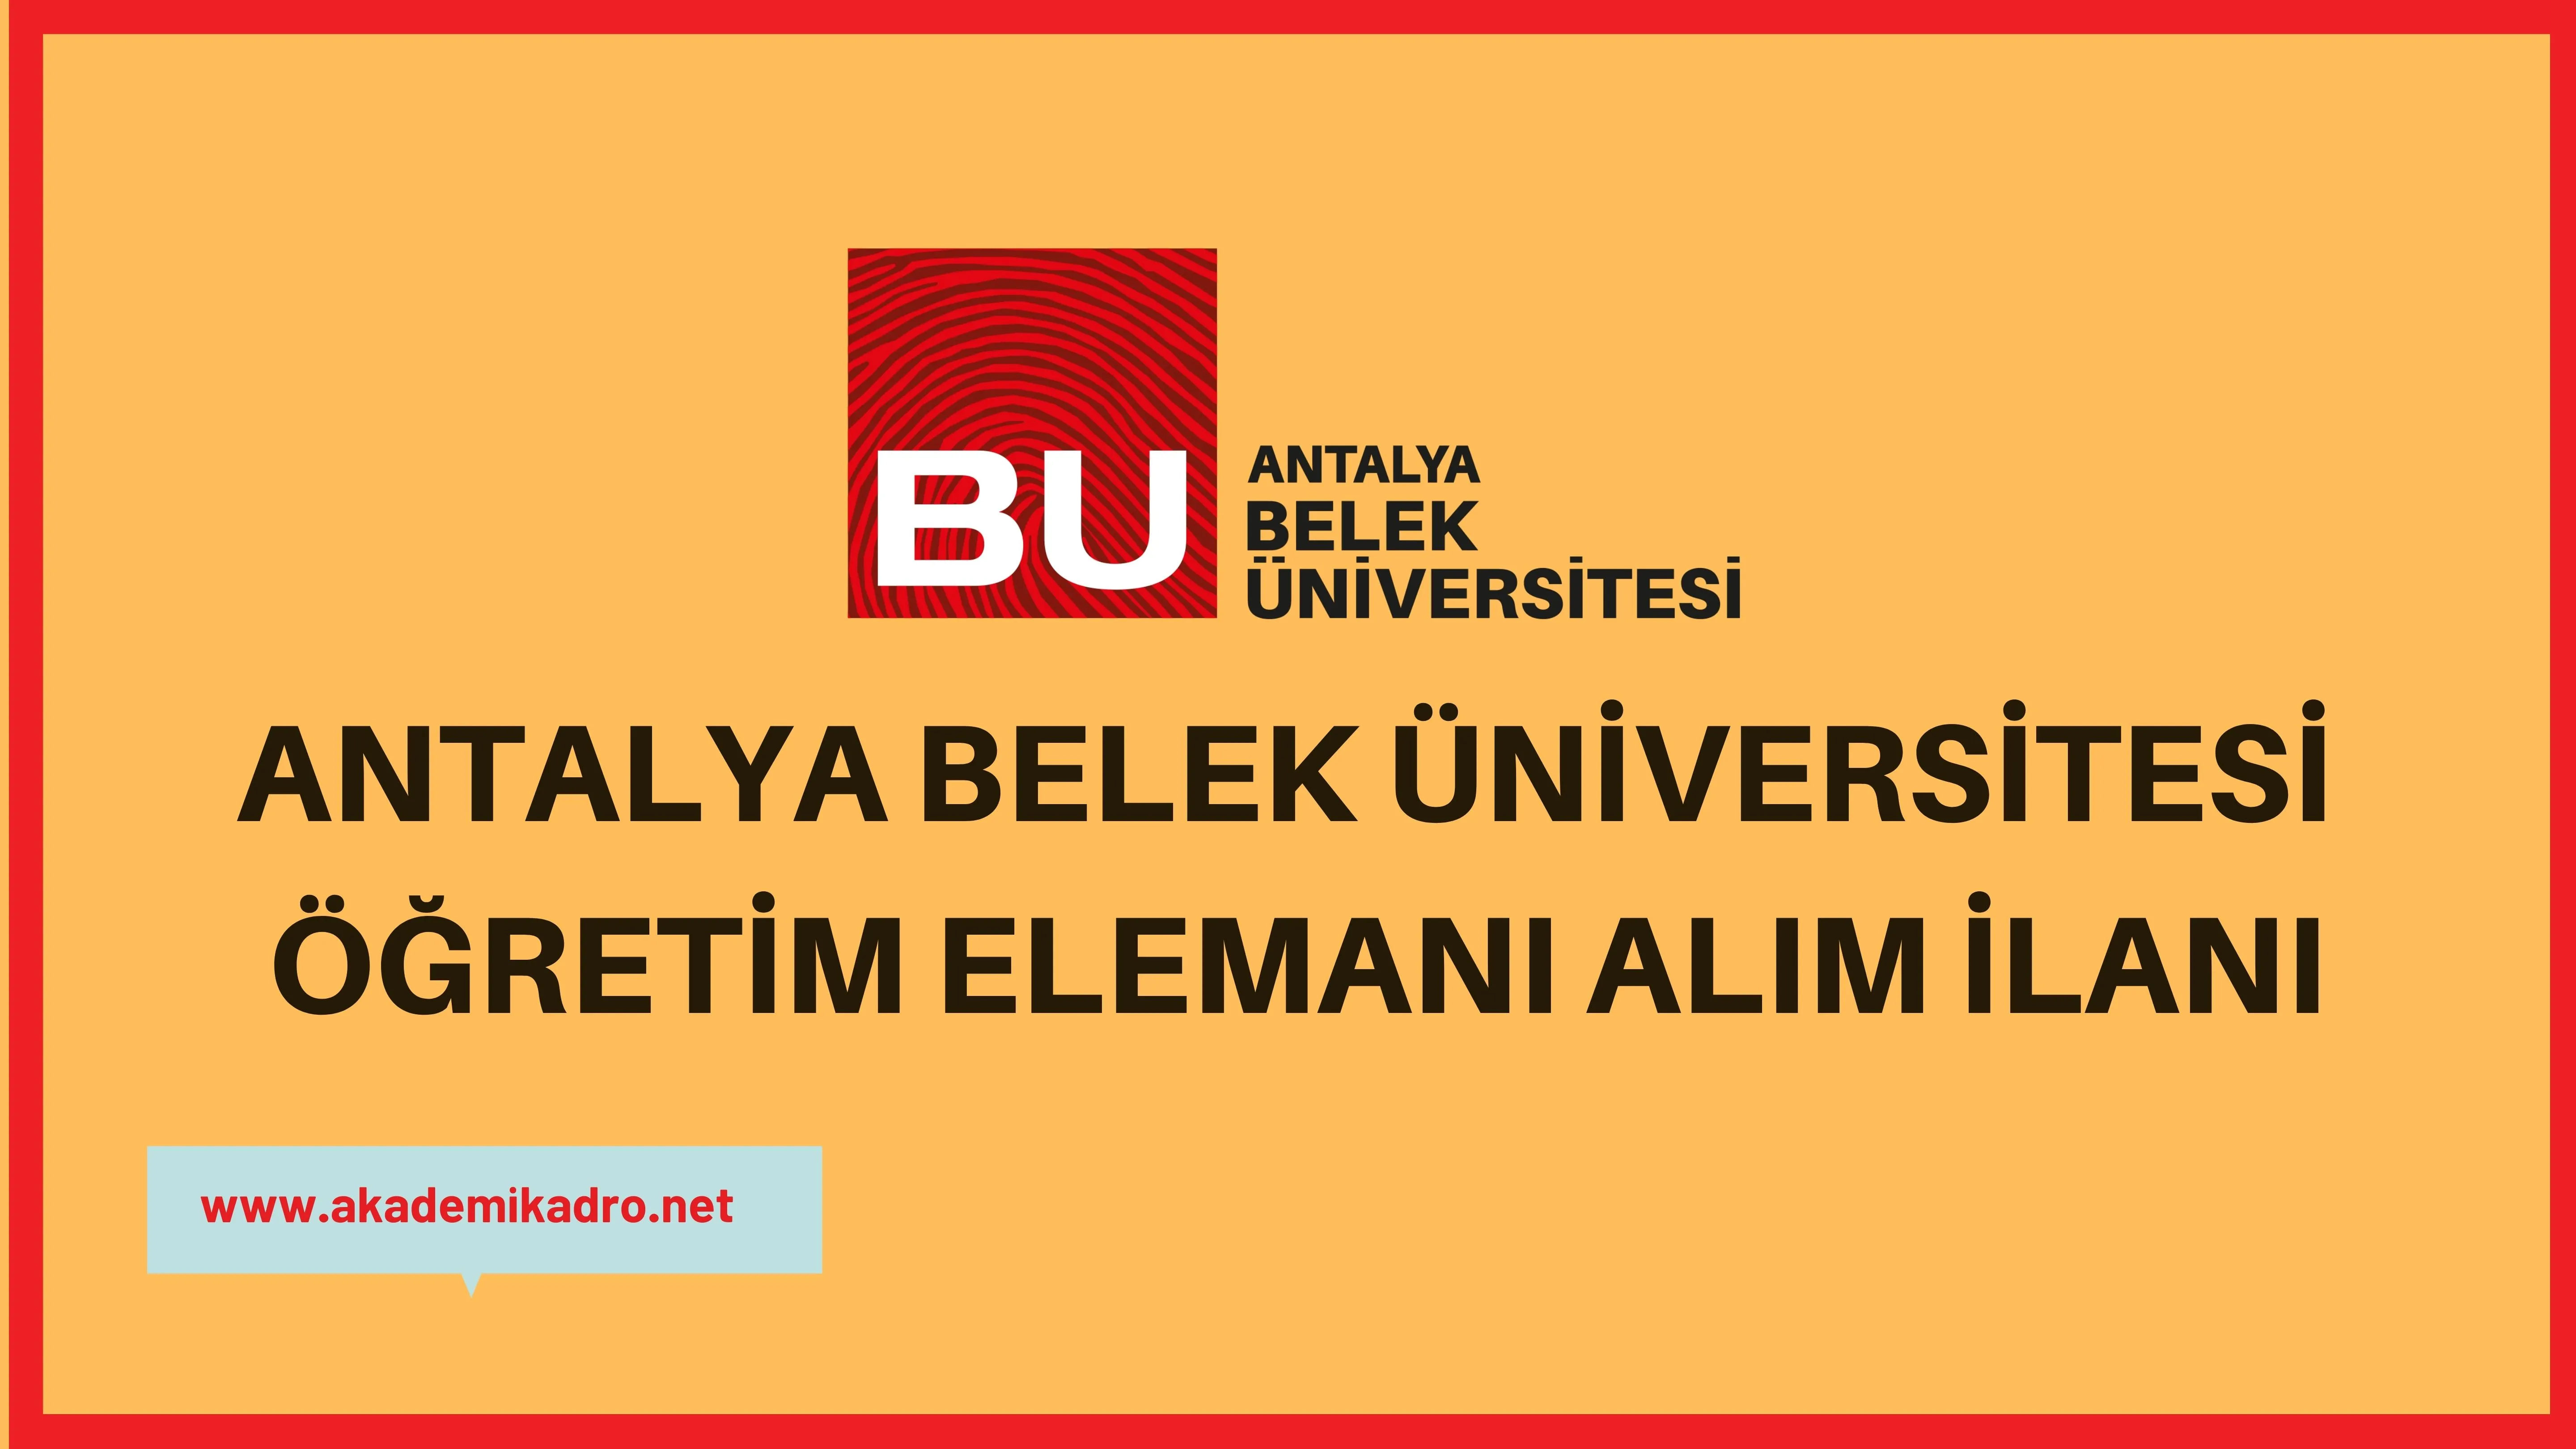 Antalya Belek Üniversitesi 2 Araştırma görevlisi, 3 Öğretim görevlisi ve 16 Öğretim üyesi alacak.